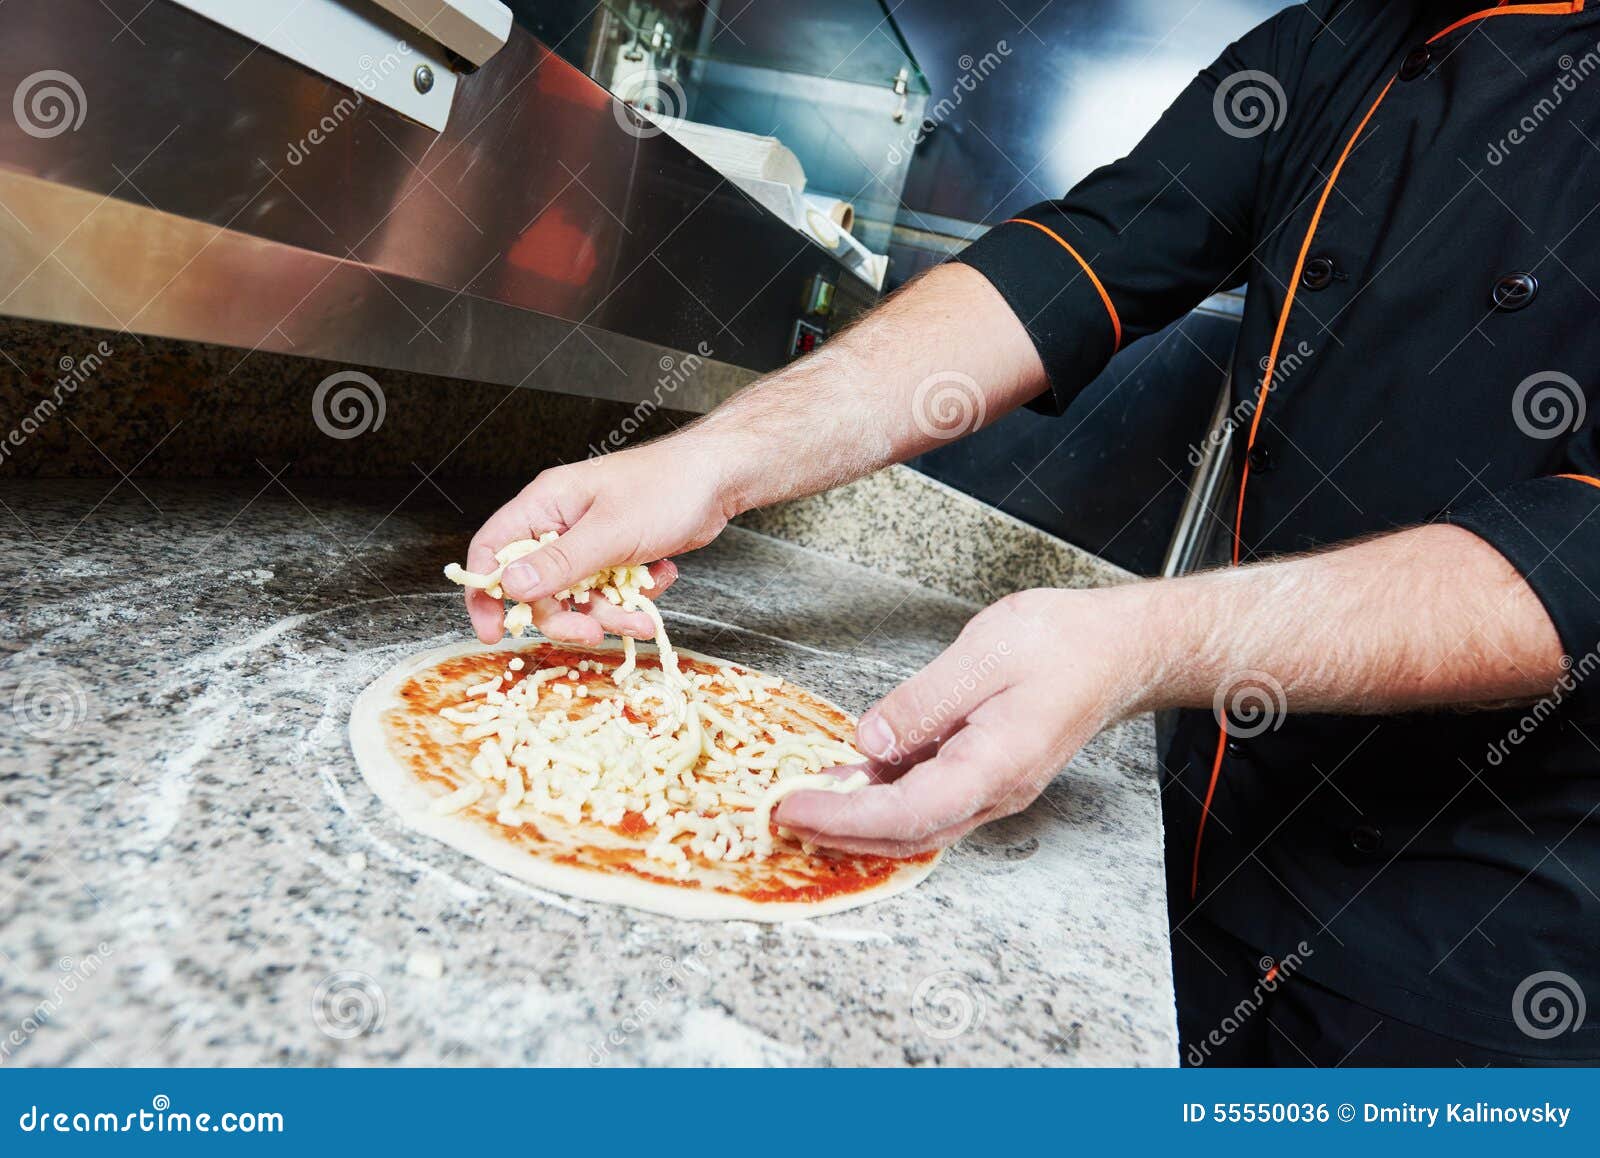 андрей шеф тесто на пиццу фото 103